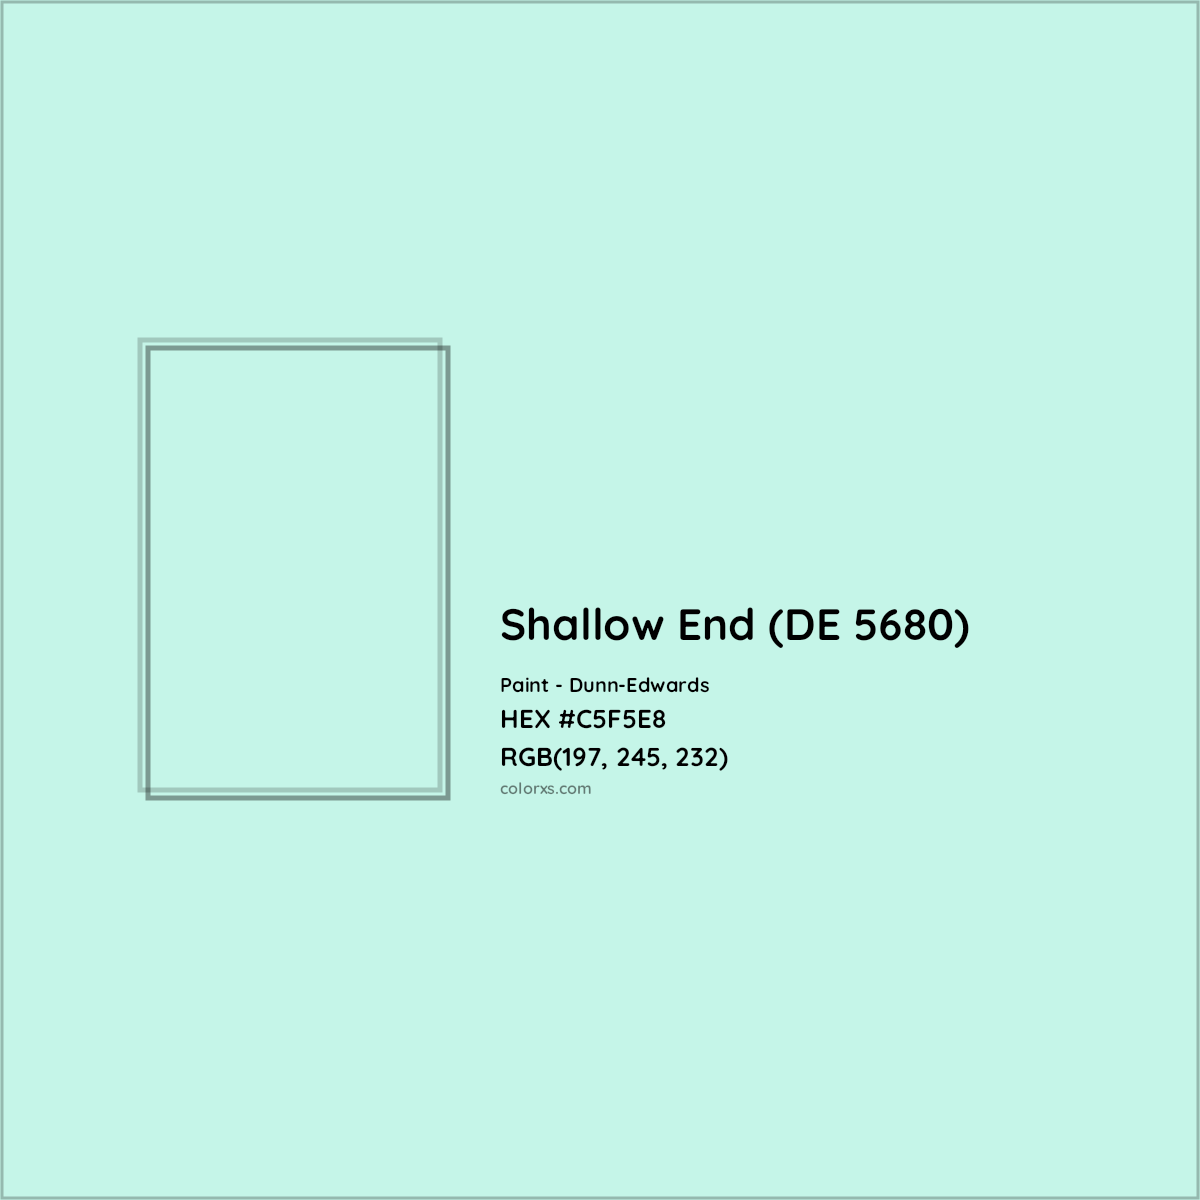 HEX #C5F5E8 Shallow End (DE 5680) Paint Dunn-Edwards - Color Code